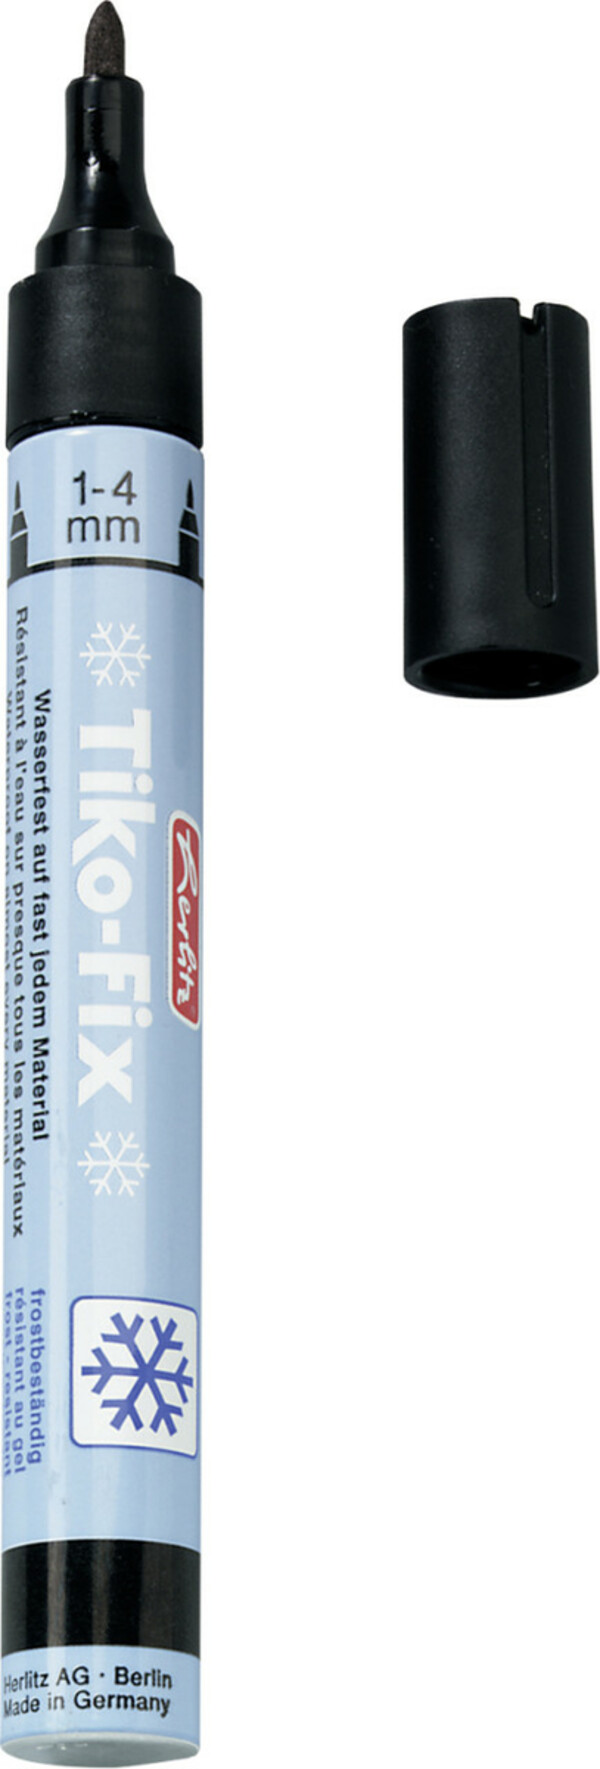 Bild 1 von herlitz Folienschreiber Tiko Fix Strichstärke: 1 - 4 mm, nachfüllbar, wasserfest, lichtbeständig, Spitze rund